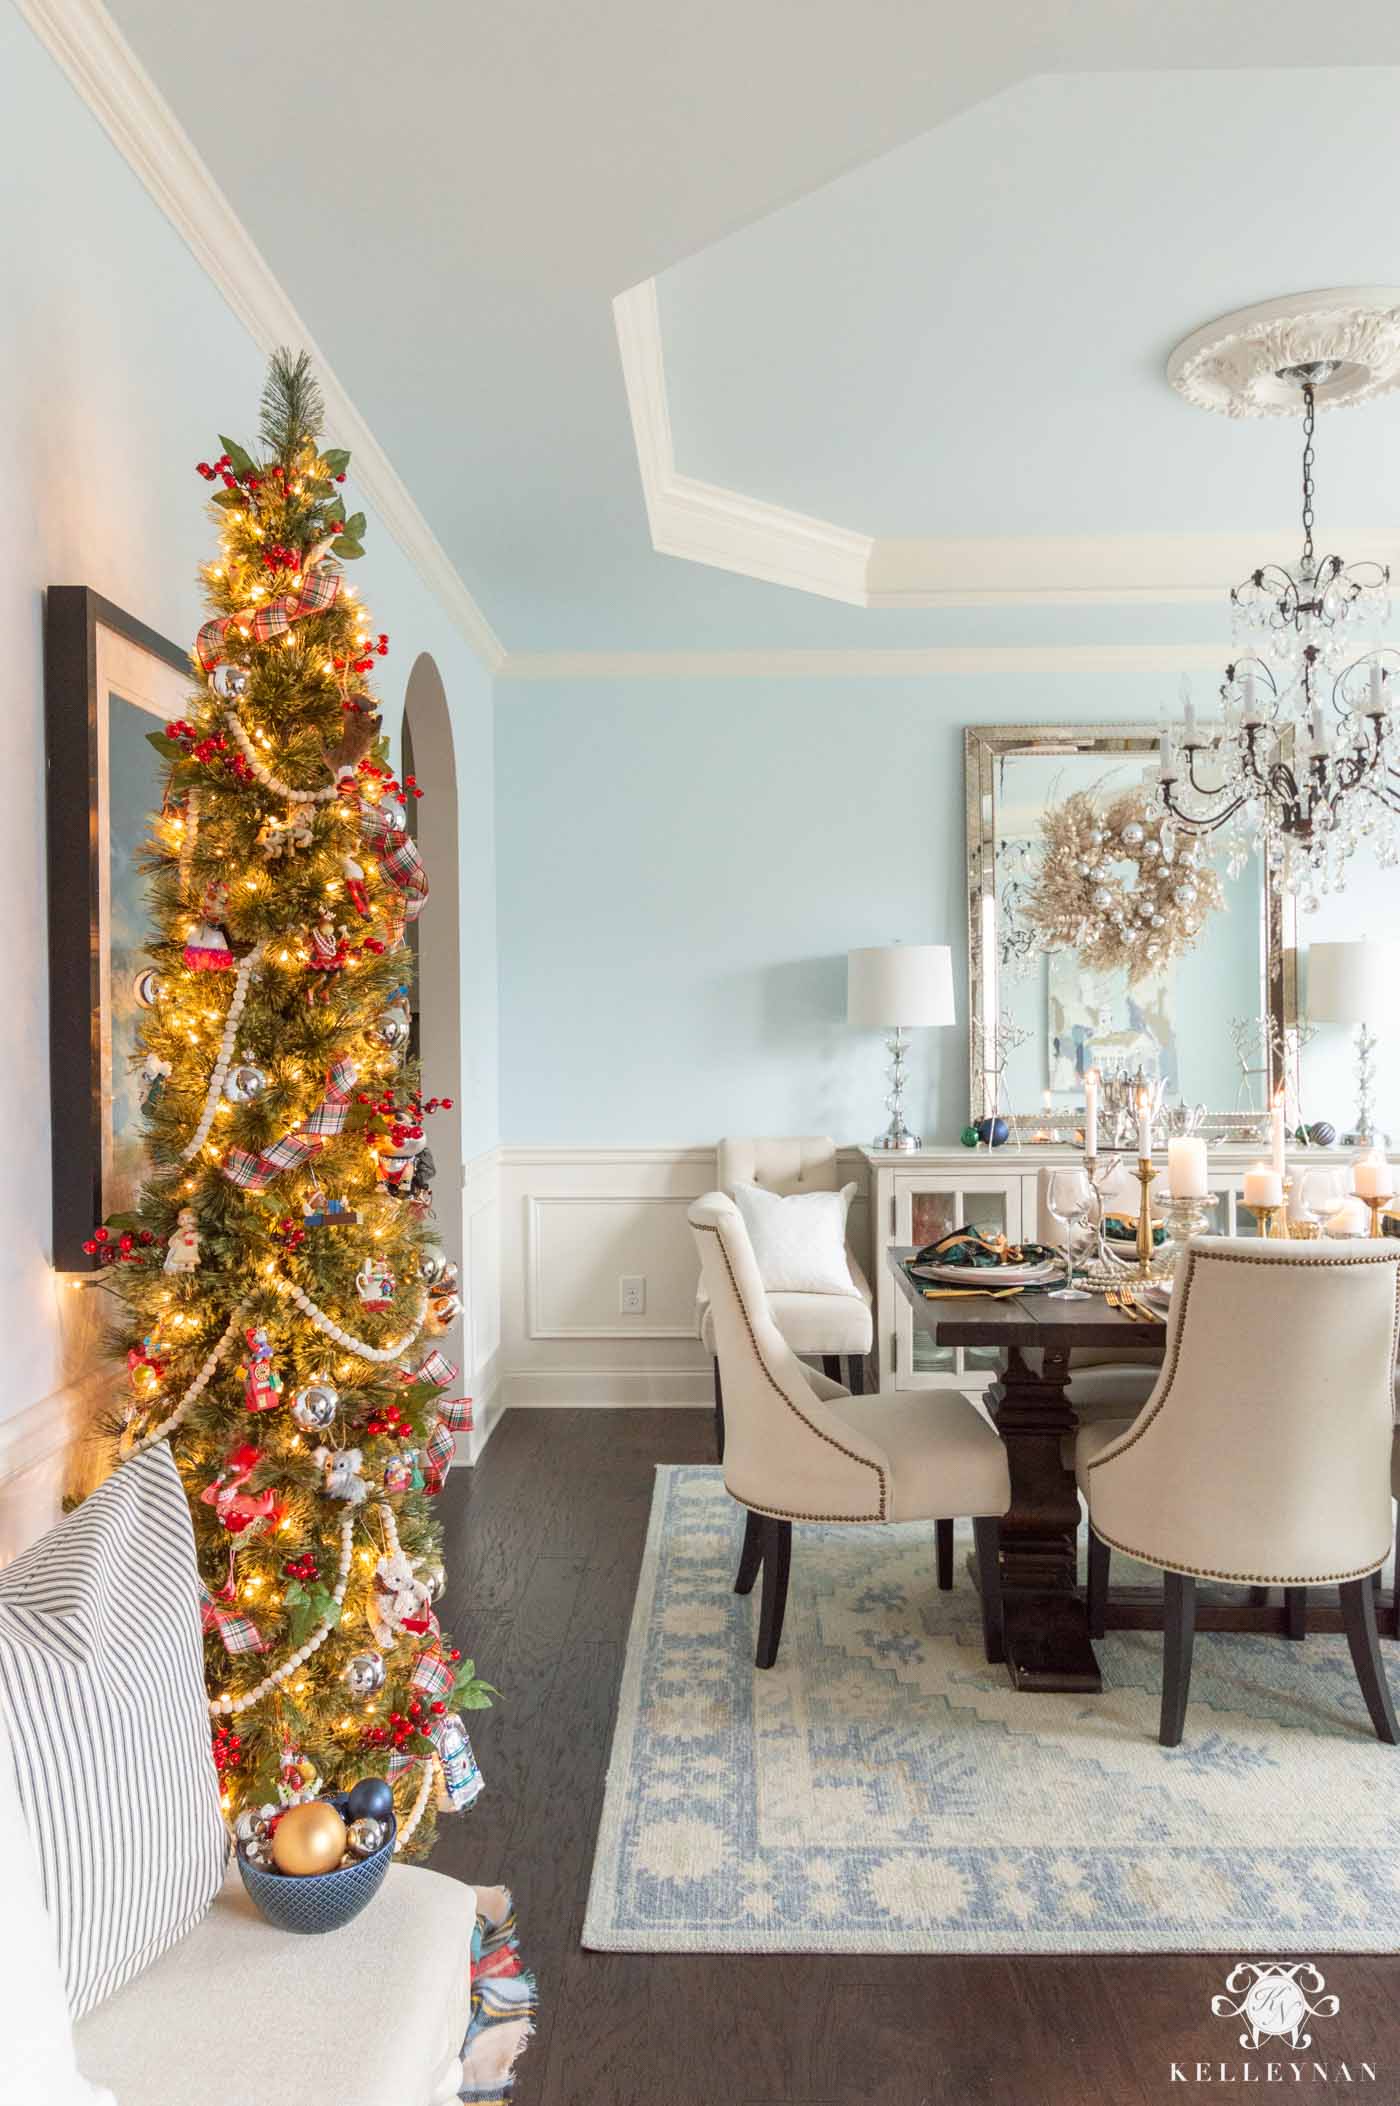 Nostalgia Christmas Tree with Family Ornaments